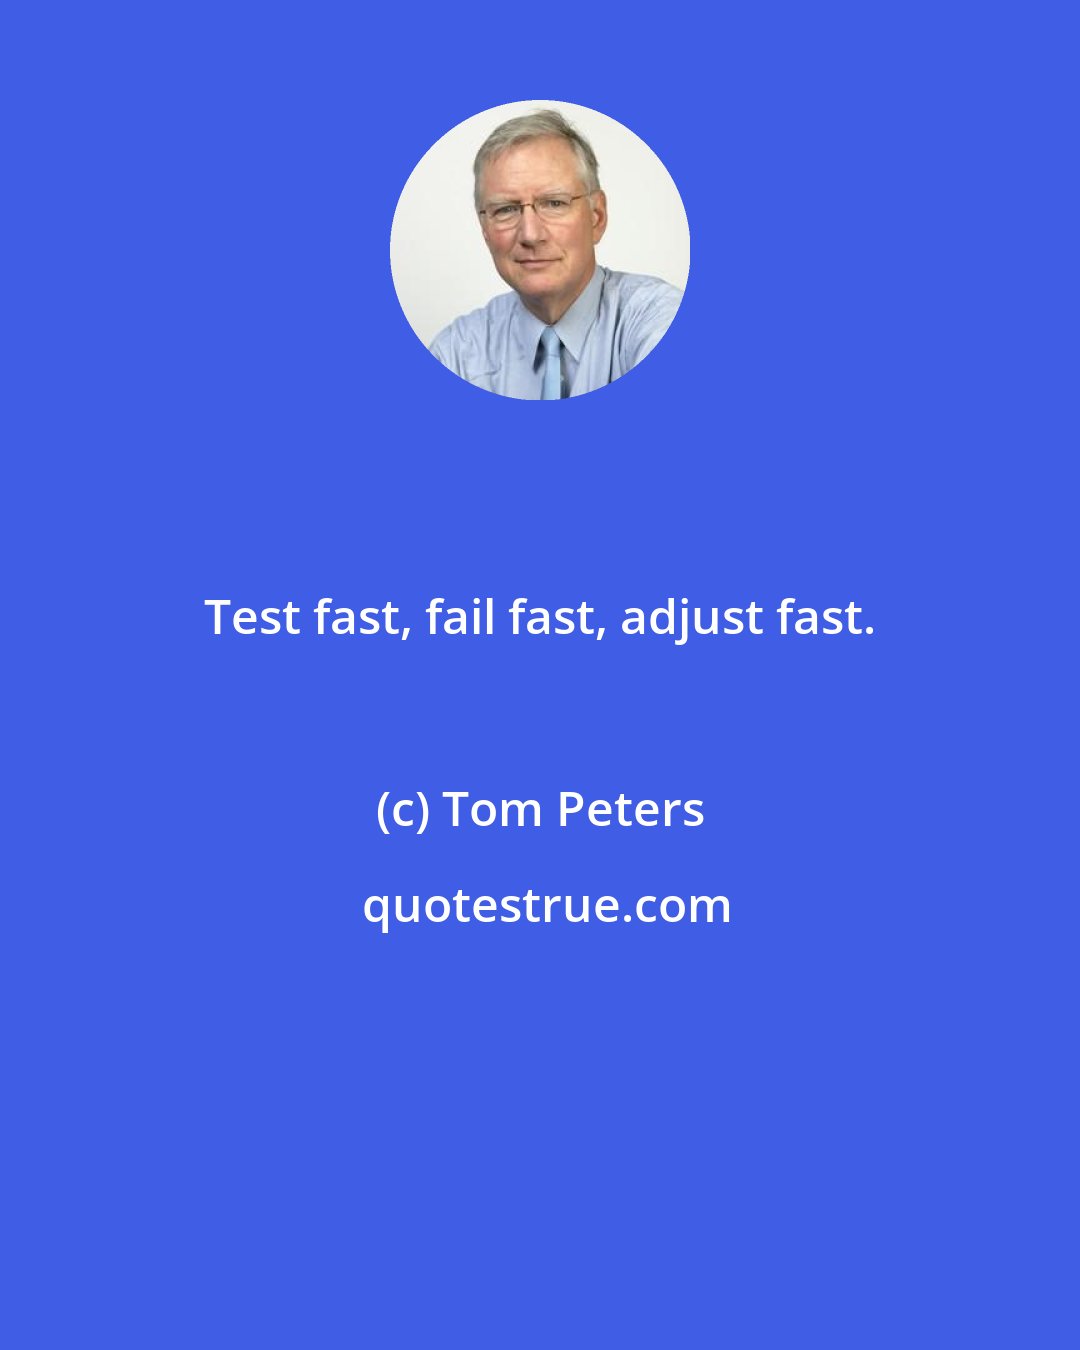 Tom Peters: Test fast, fail fast, adjust fast.